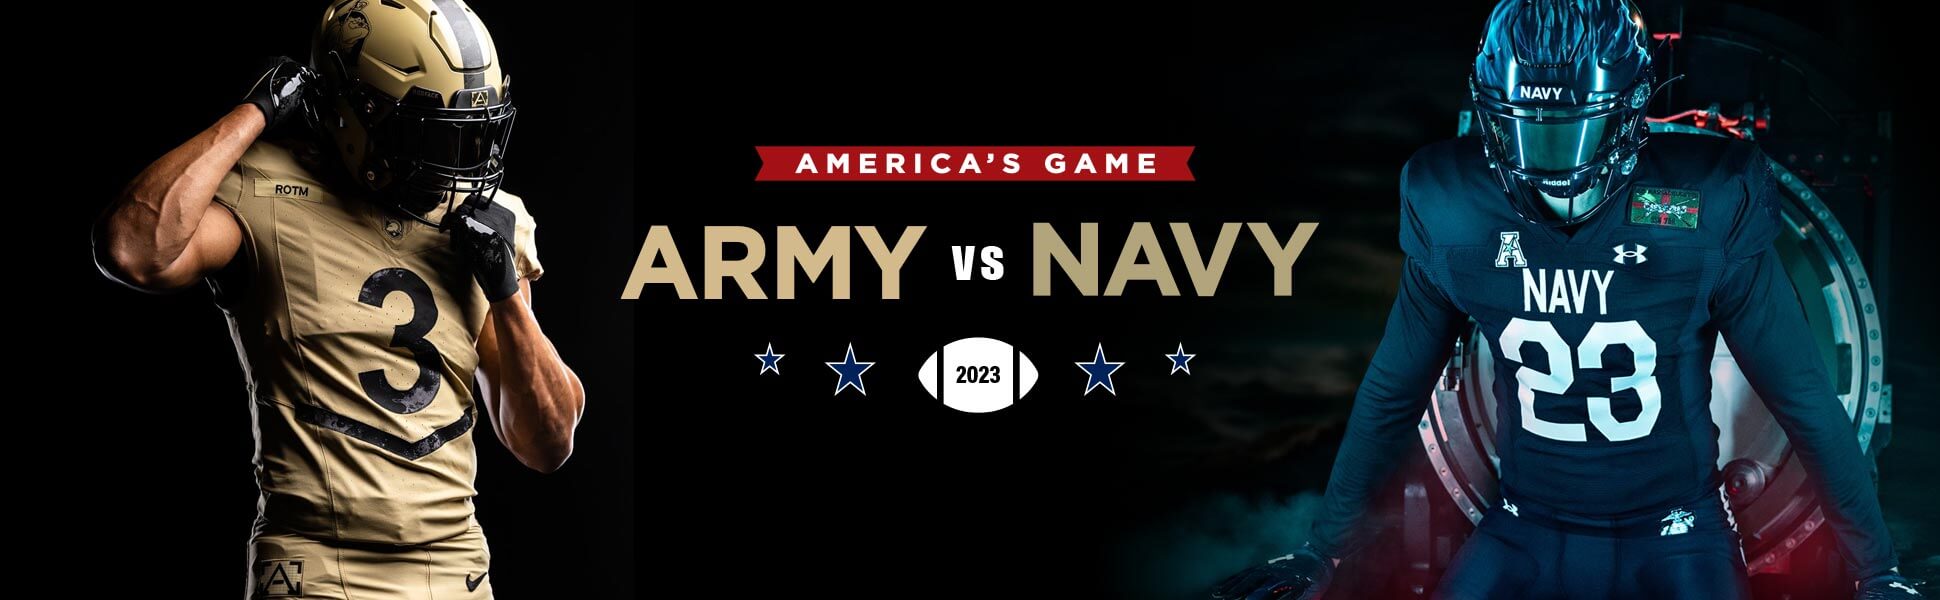 Army vs Navy 2023, America's Game